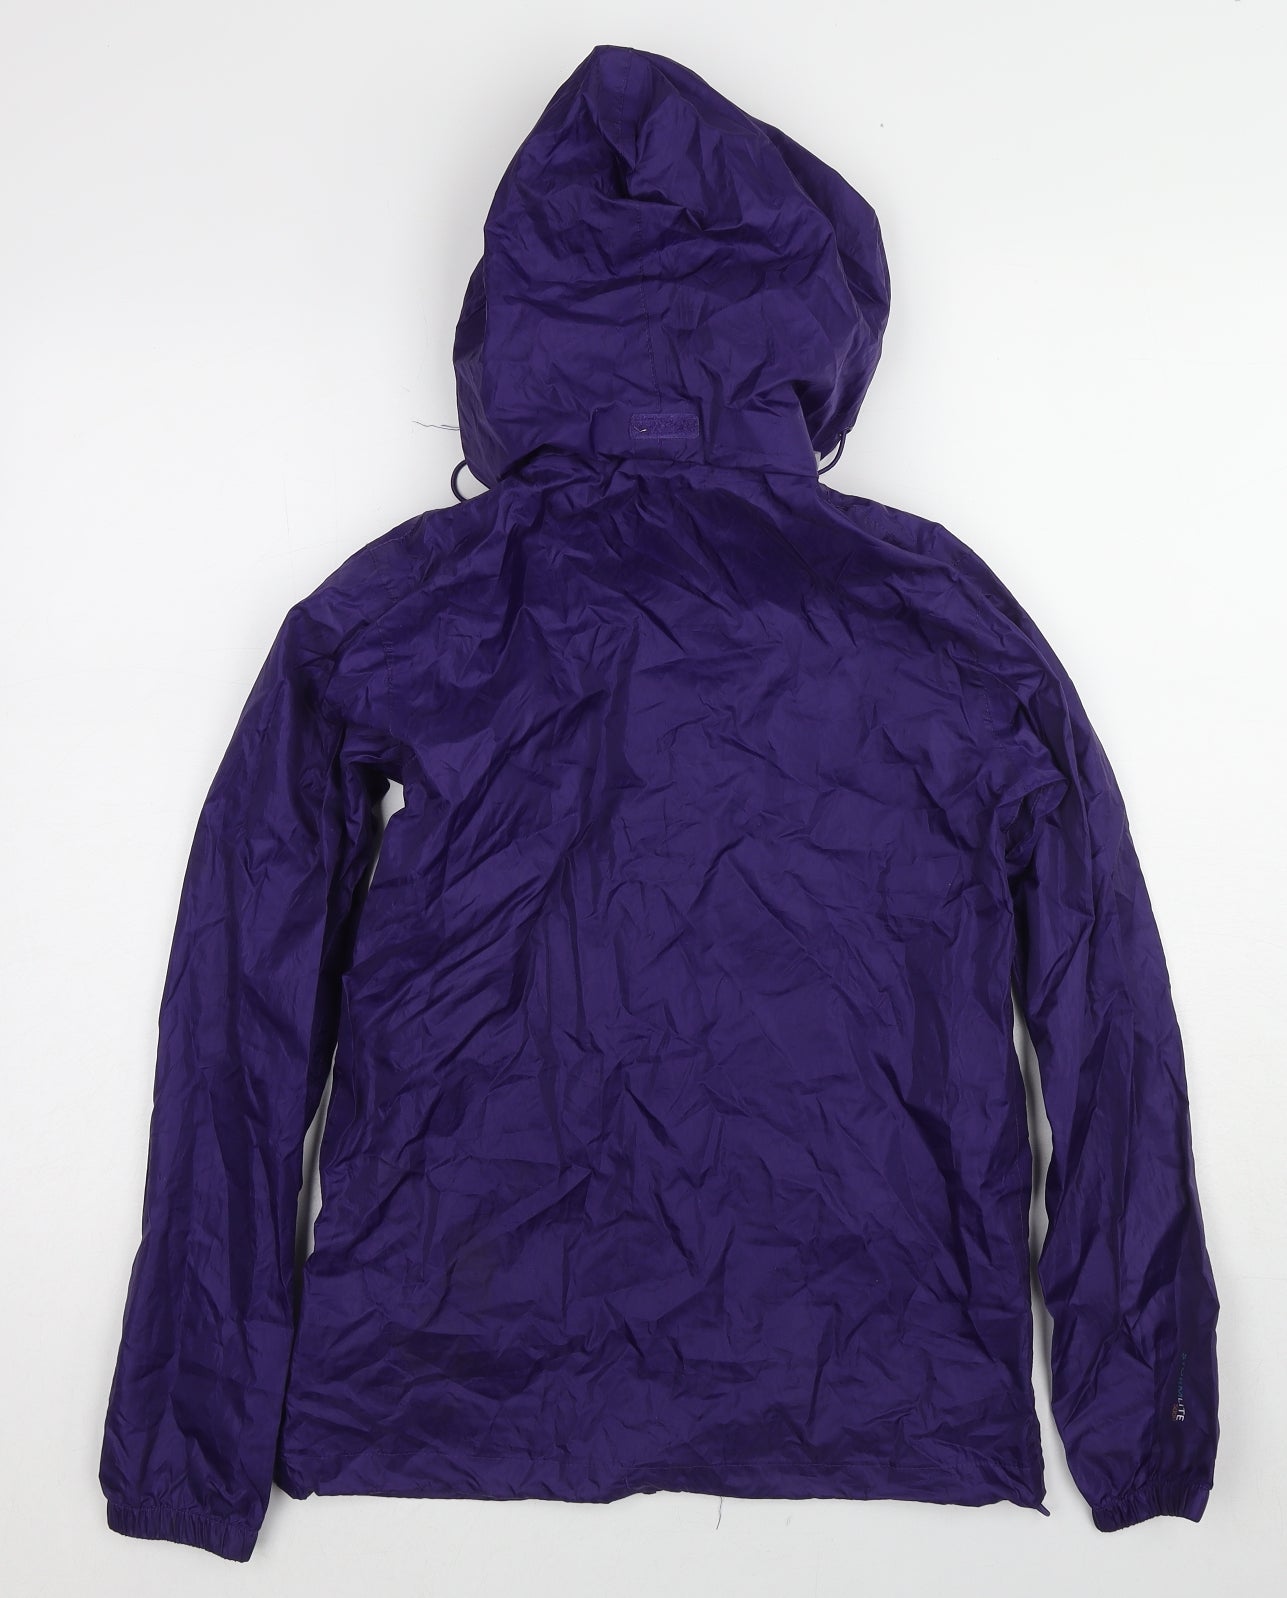 Gelert Womens Purple Windbreaker Jacket Size 6 Zip